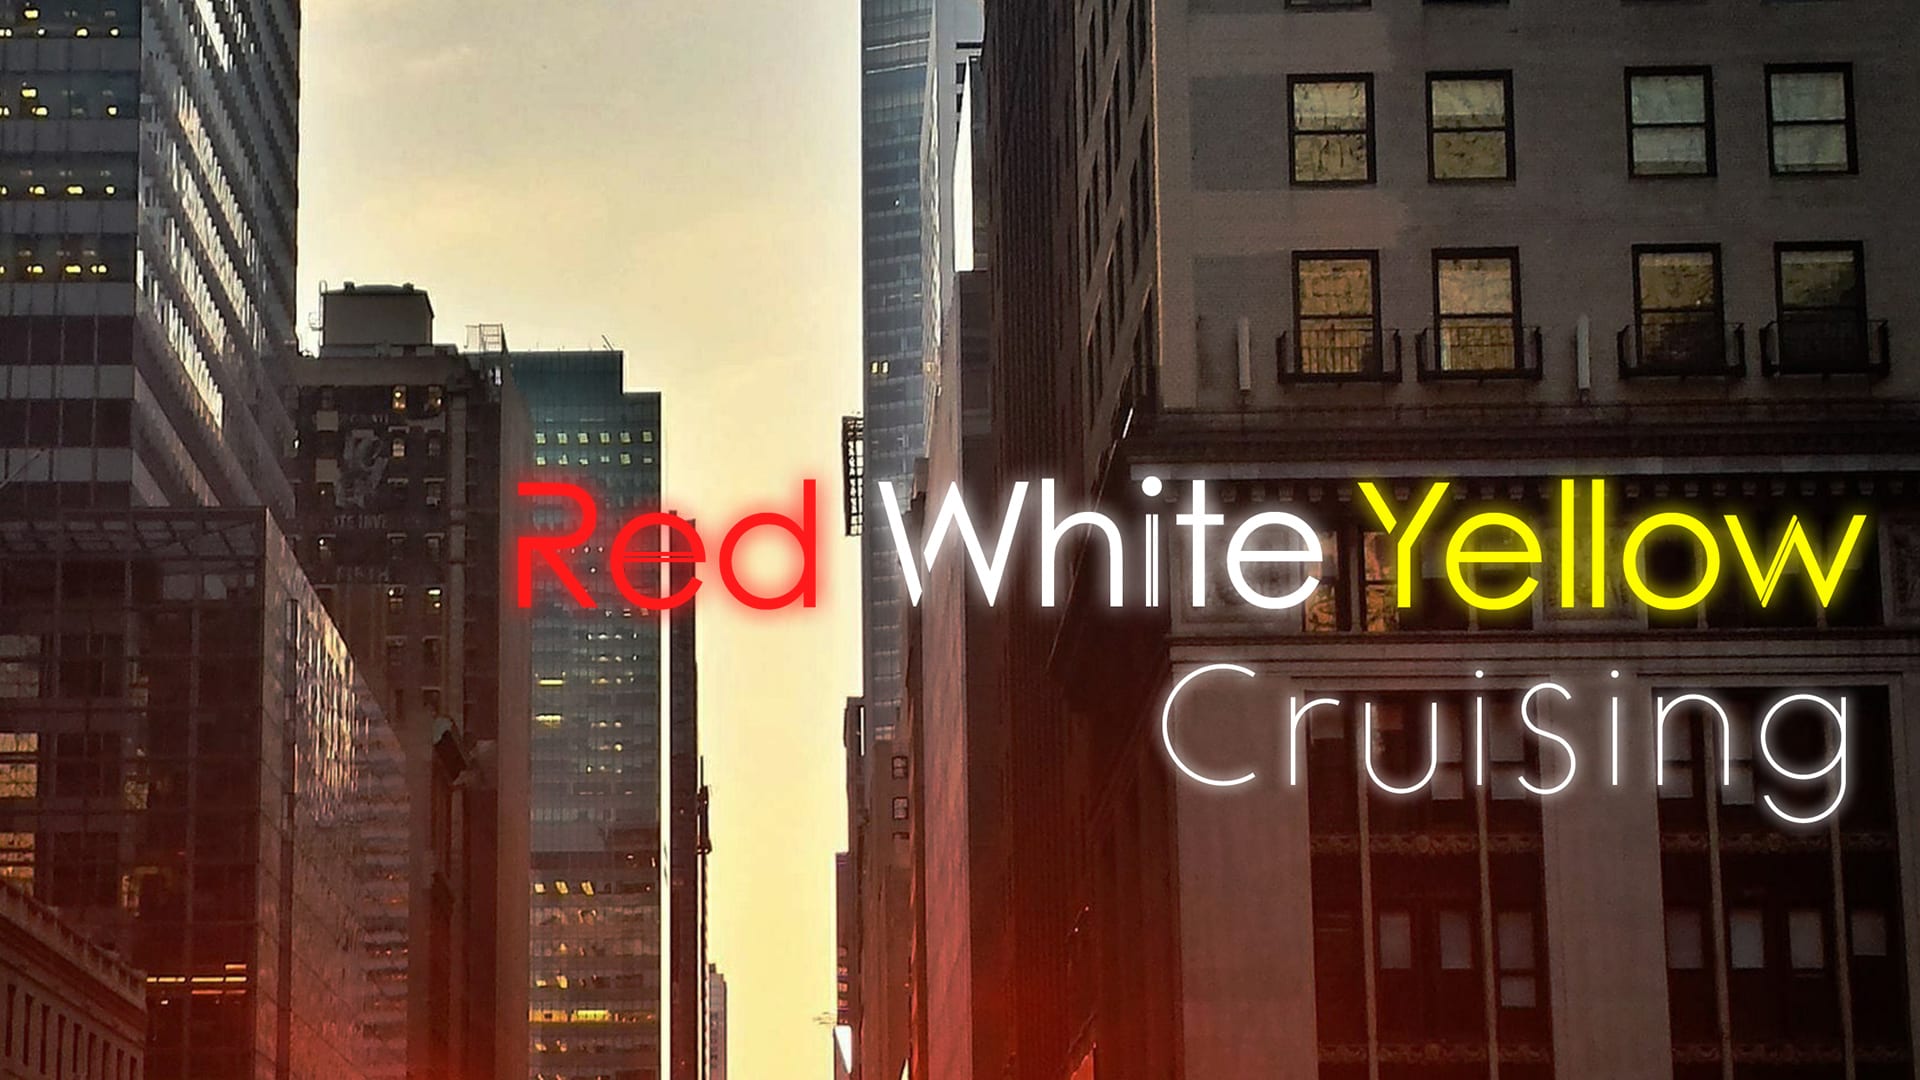 Red White Yellow Cruising